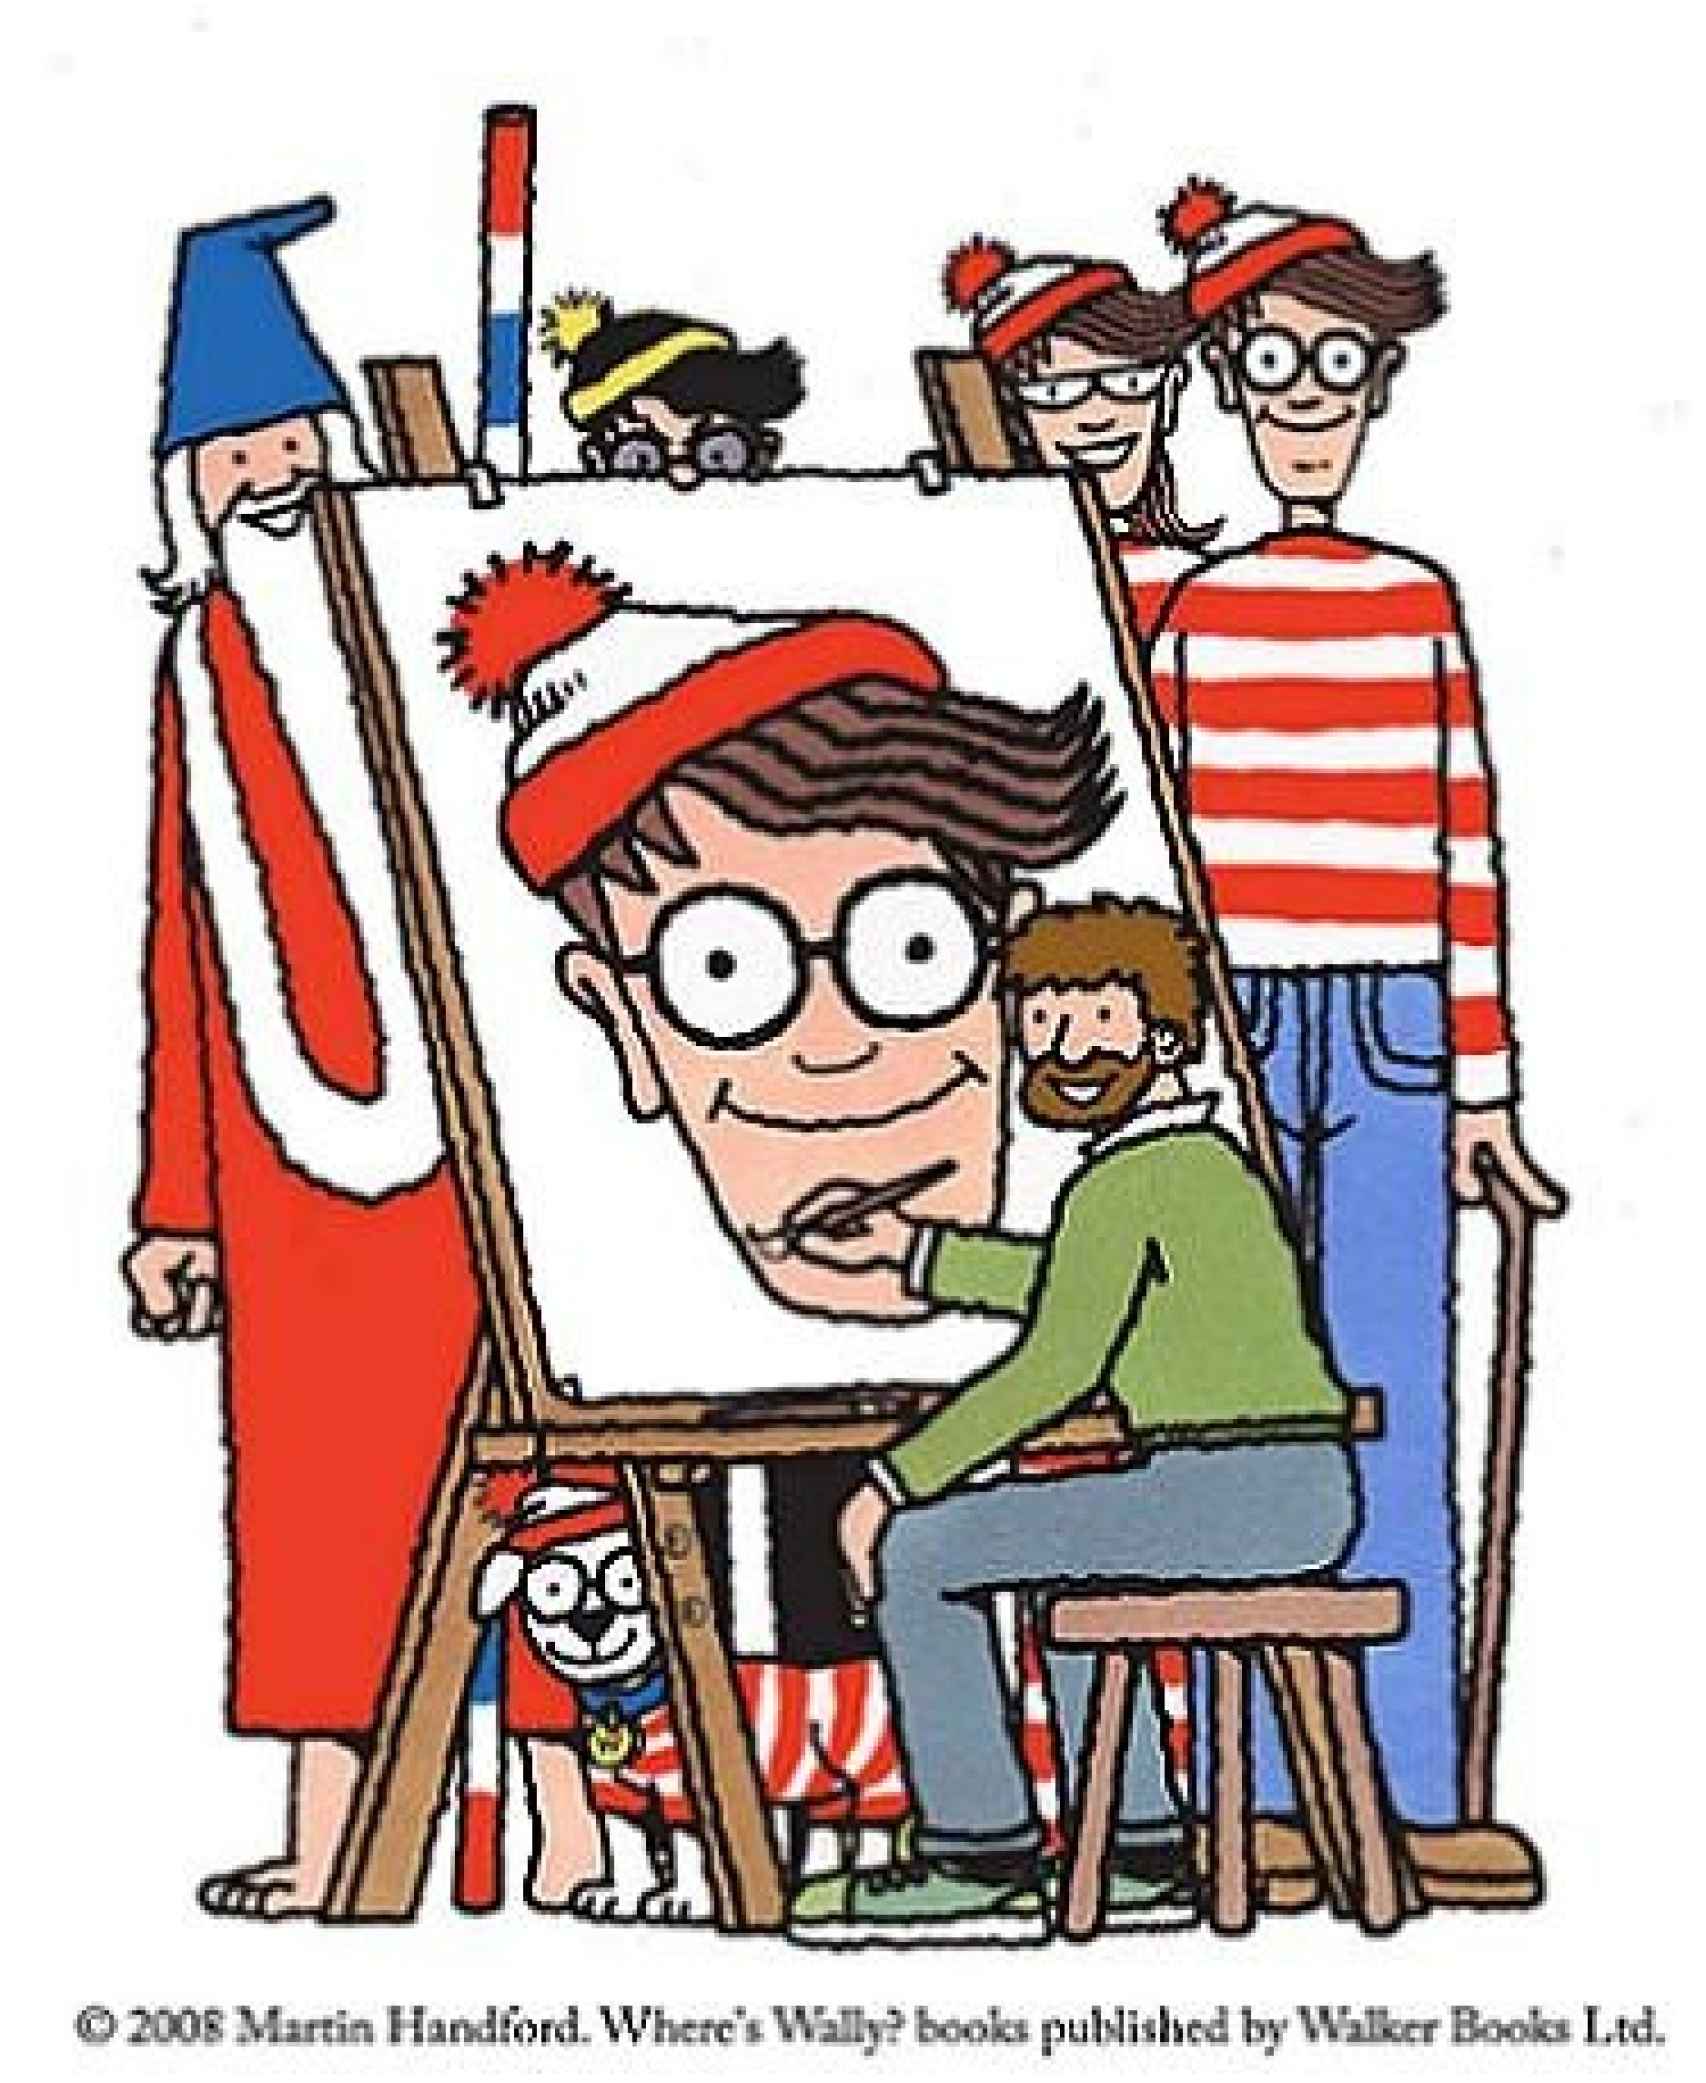 Autorretrato de Martin Handford junto a Wally y el resto de personajes principales de sus libros © Martin Handford